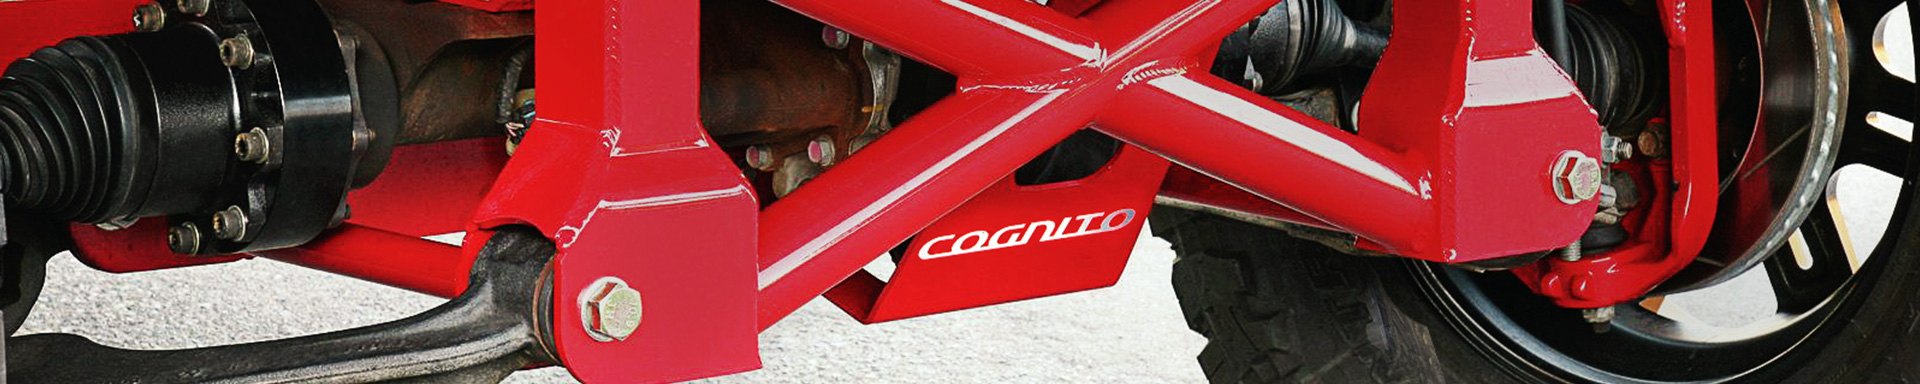 Cognito Motorsports Driveline & Axles